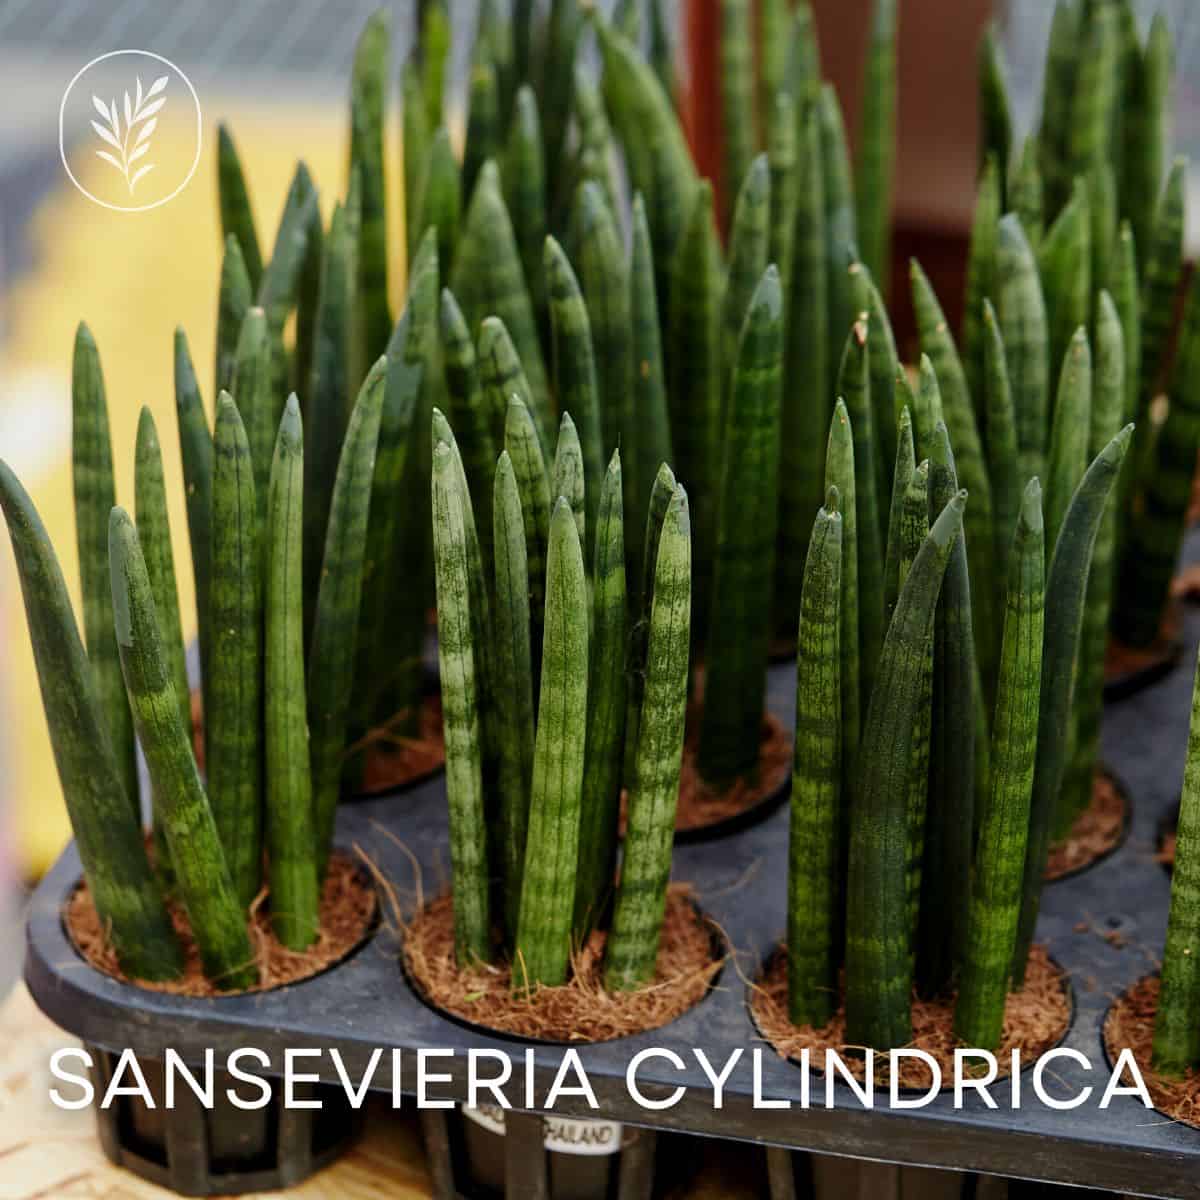 Sansevieria cylindrica via @home4theharvest